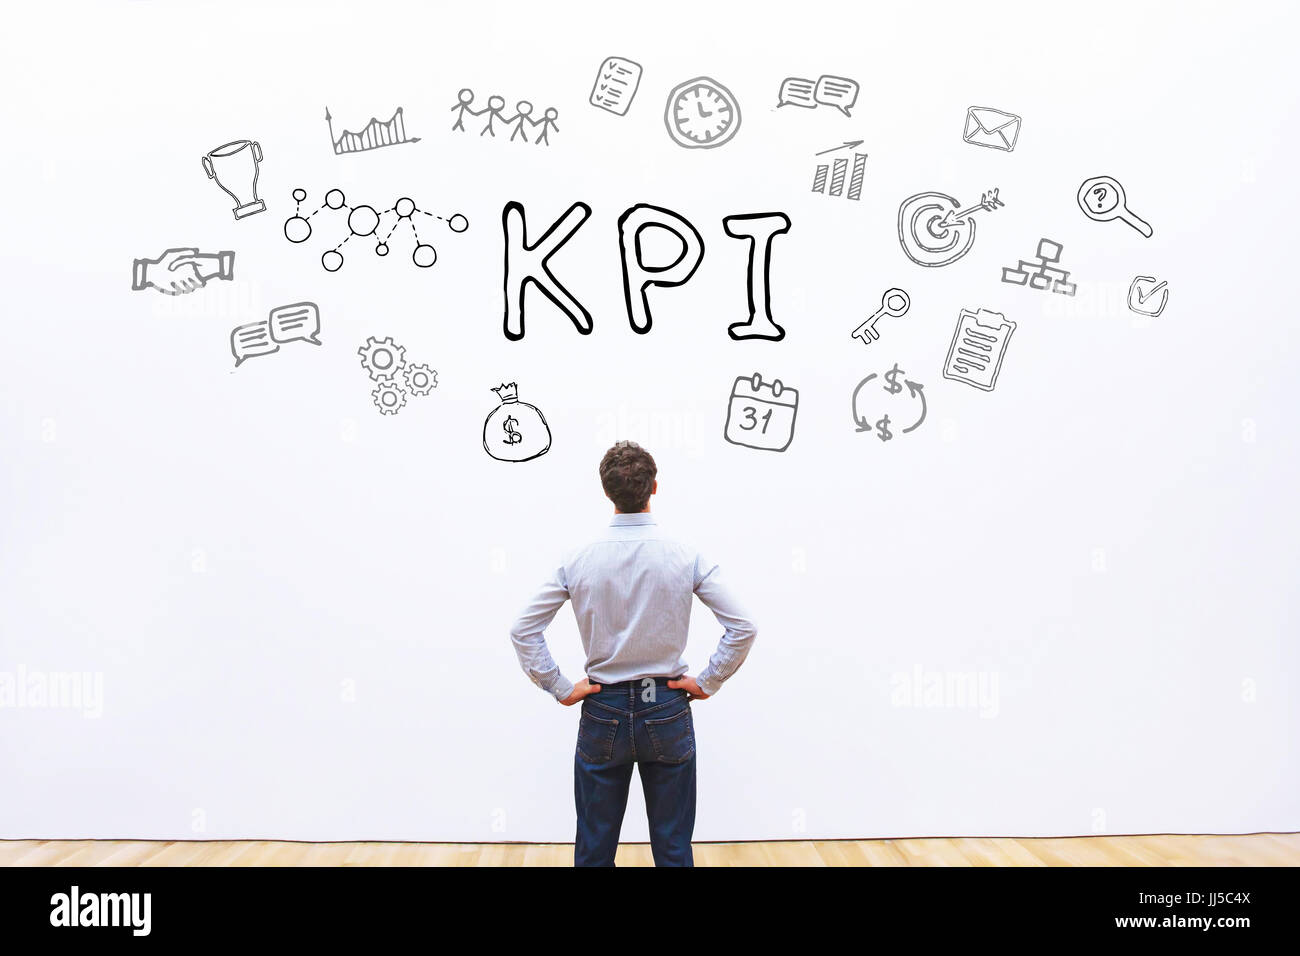 Kpi-Konzept, Key Performance Indicator Stockfoto